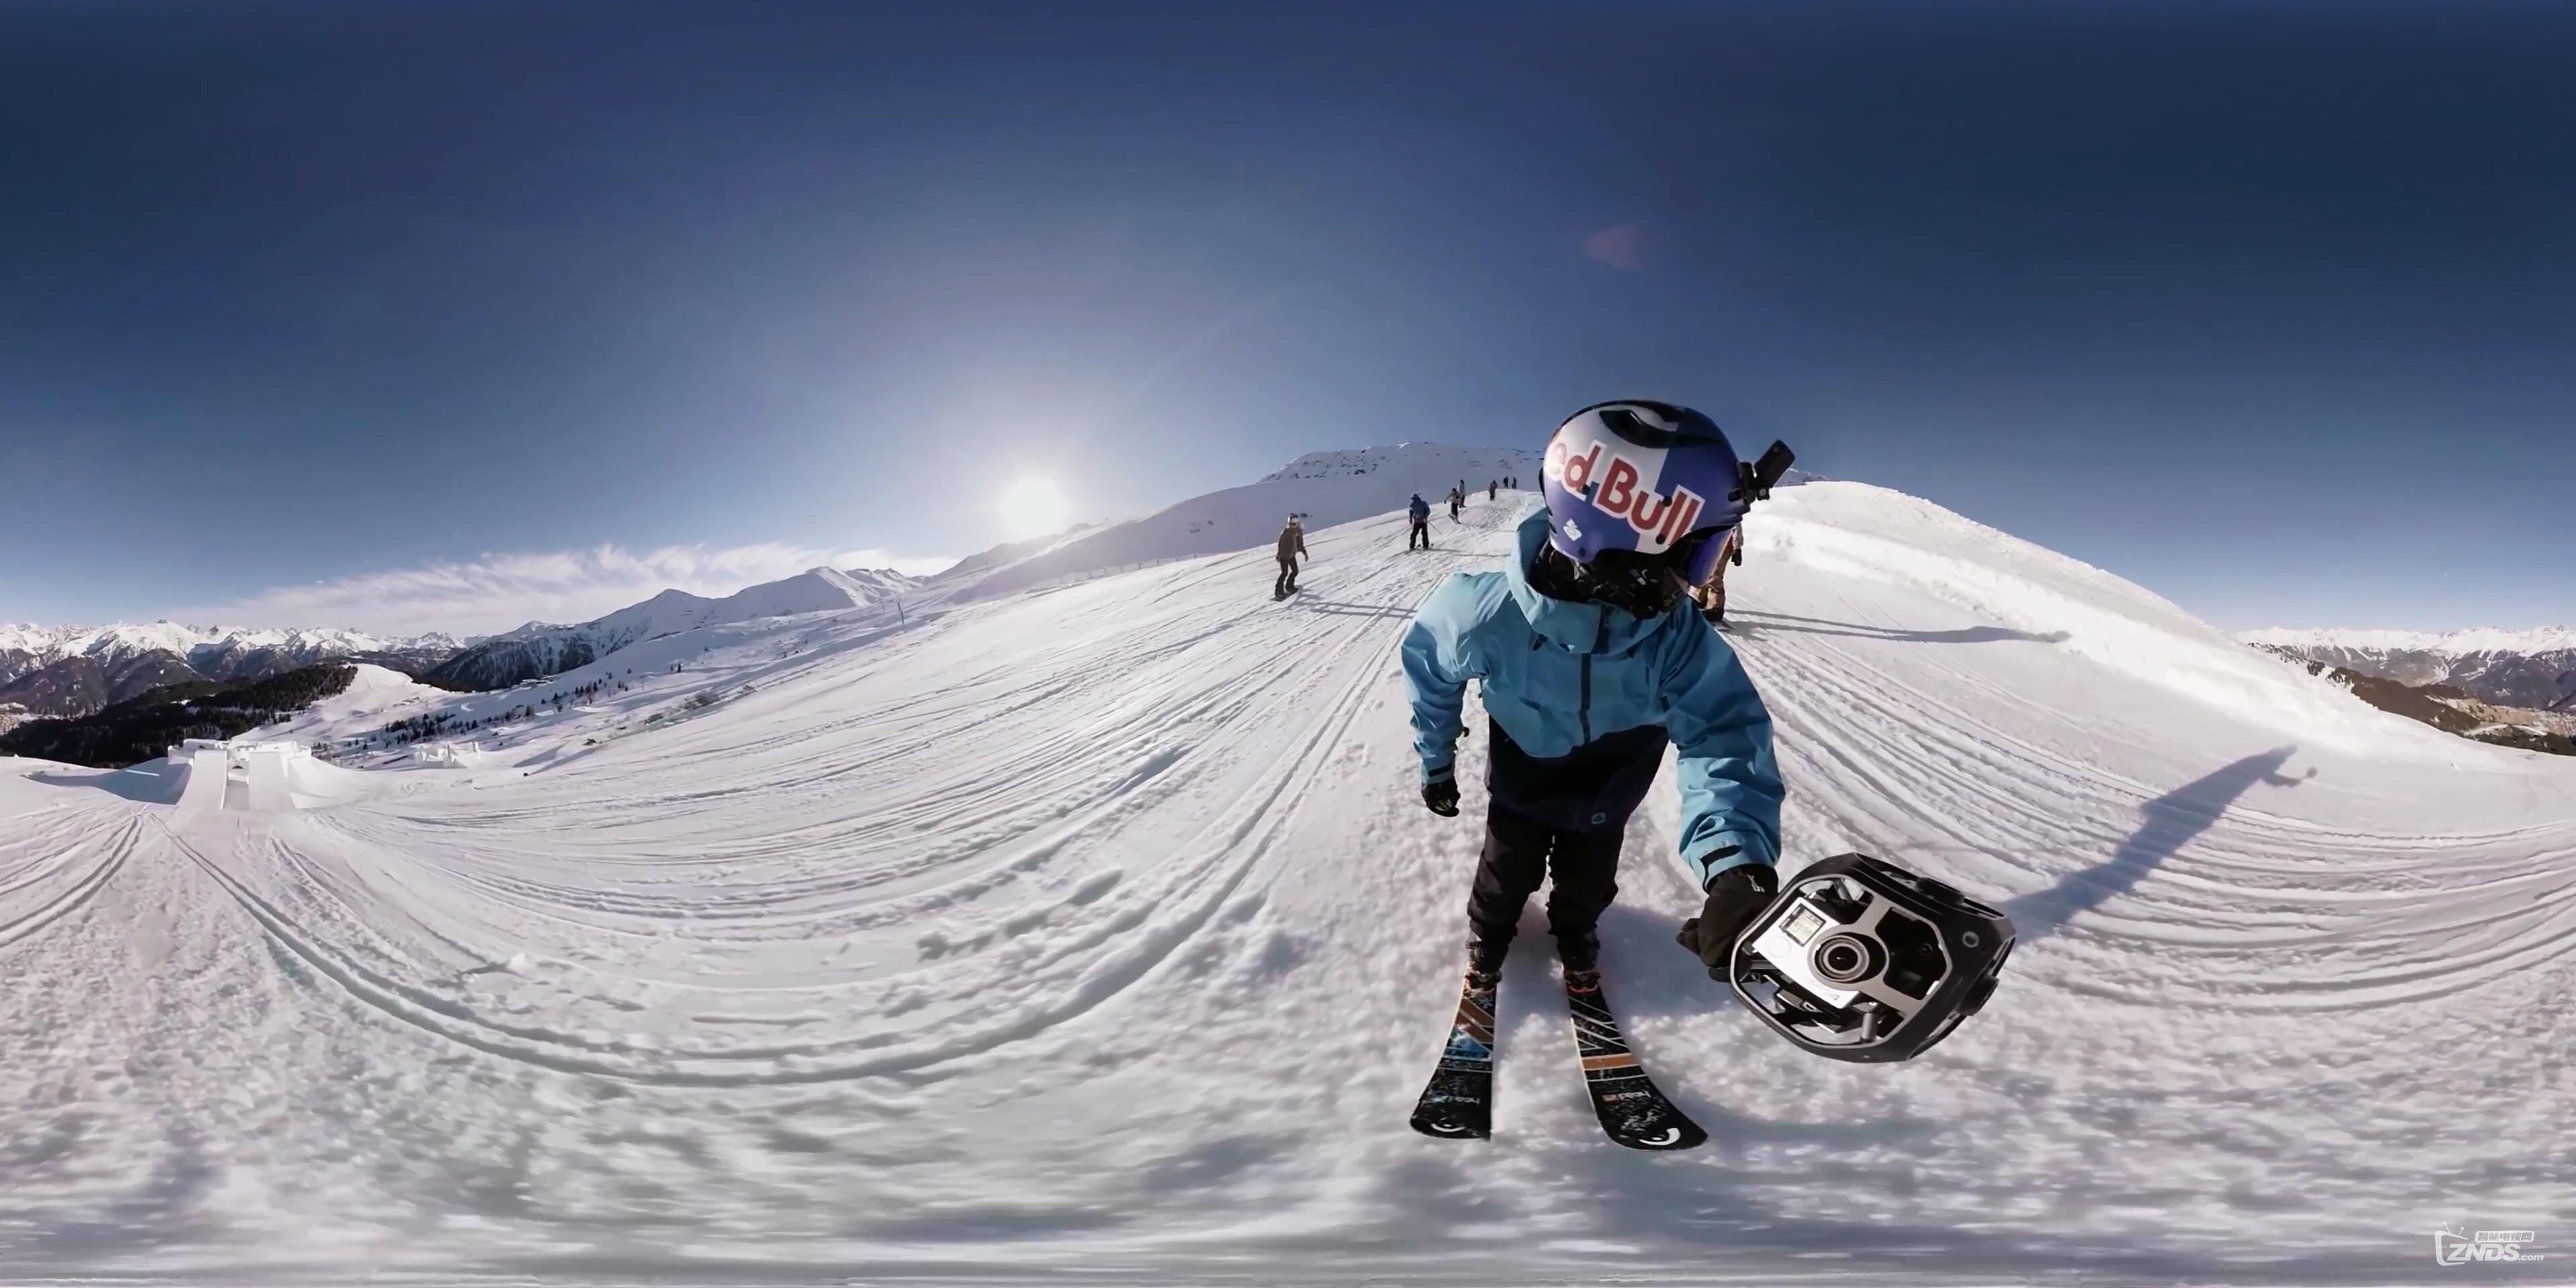 【360全景视频】极限运动:滑雪视频精彩剪辑_